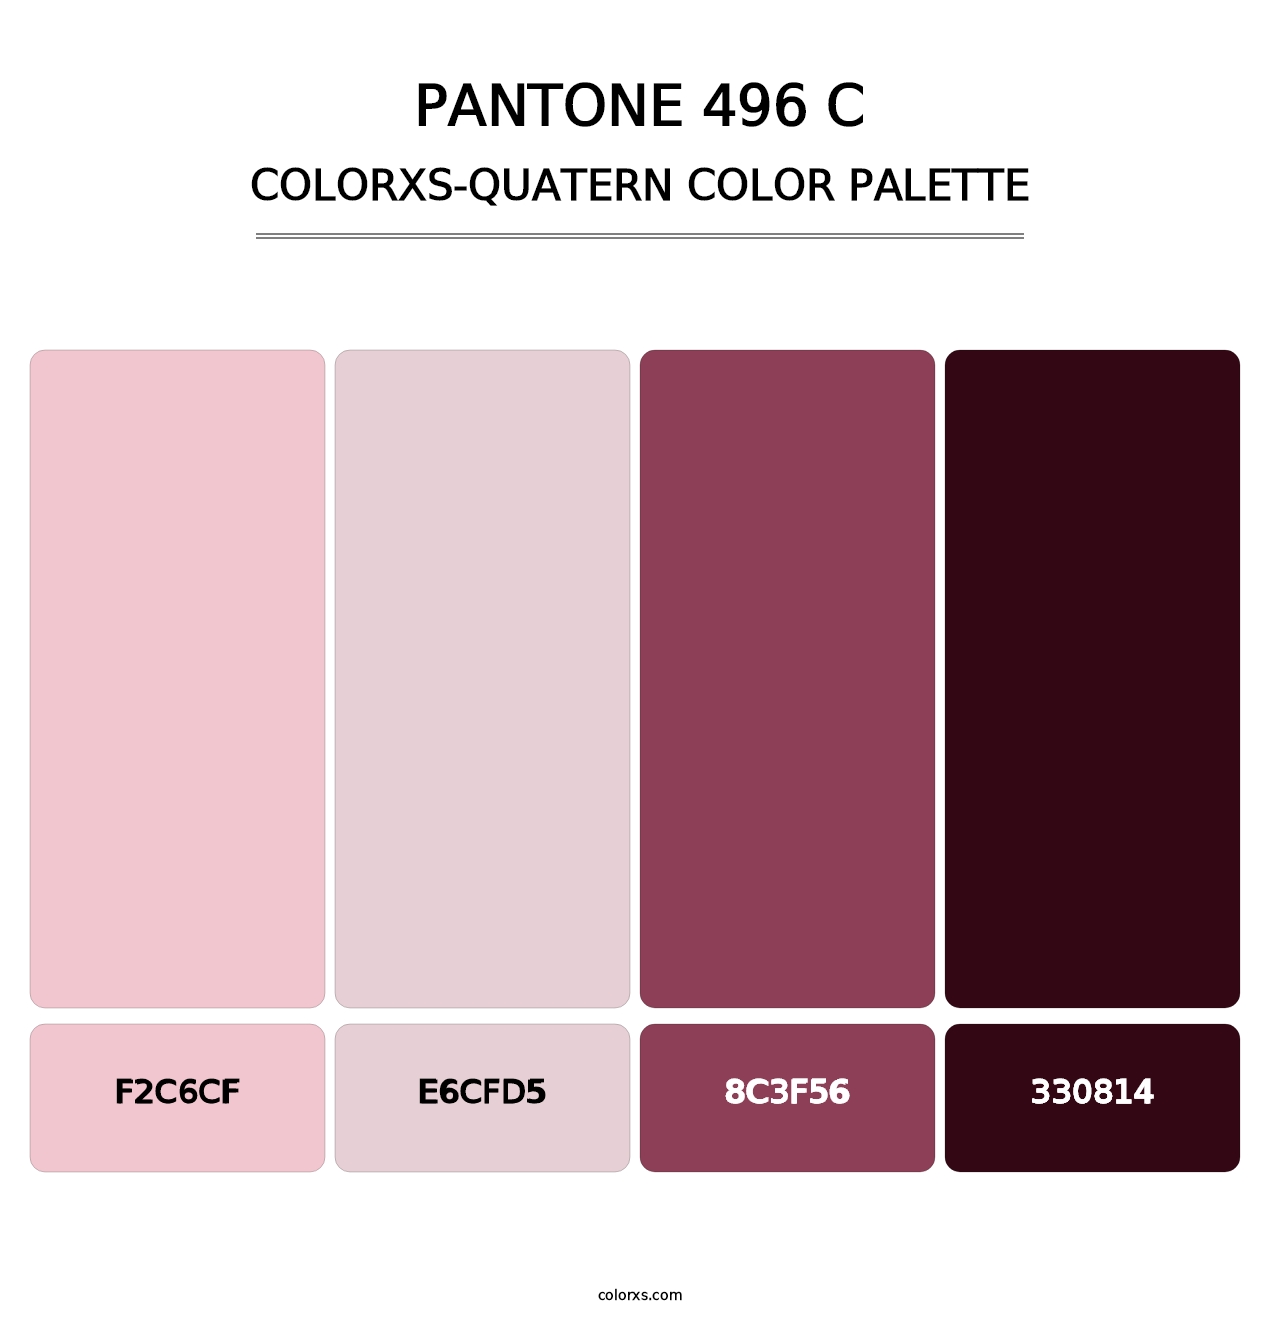 PANTONE 496 C - Colorxs Quatern Palette